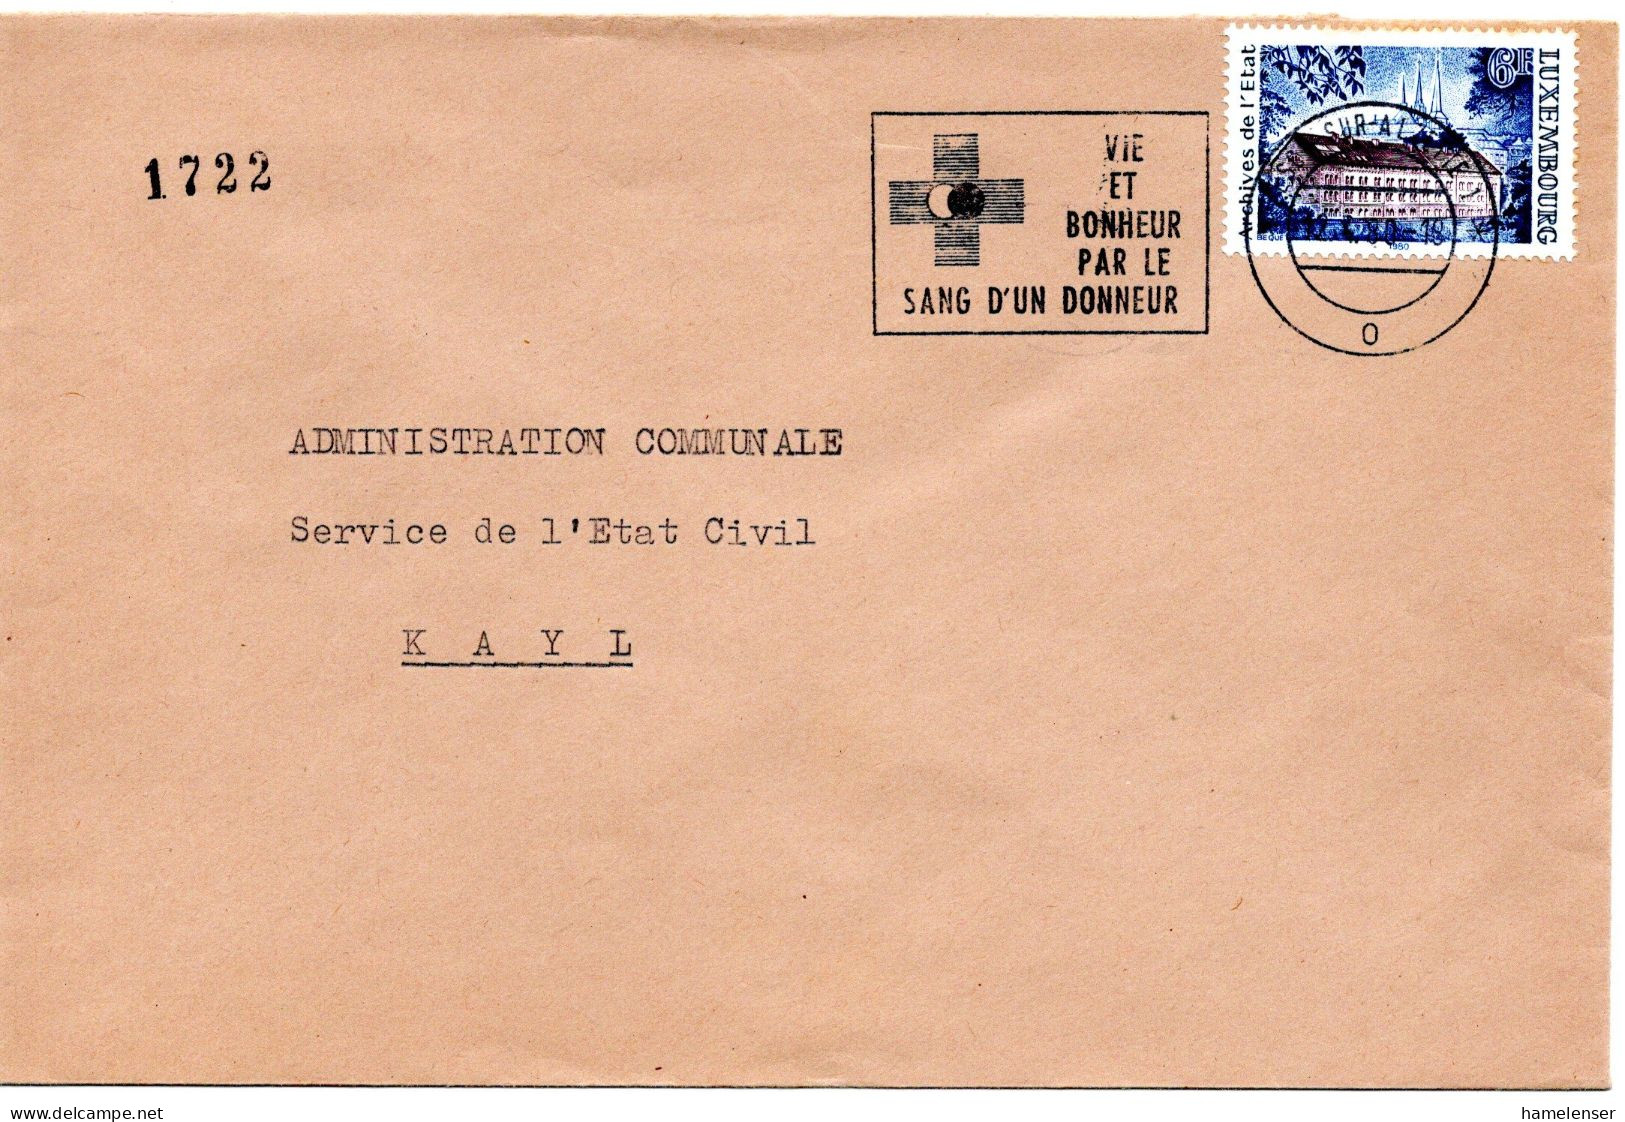 60690 - Luxemburg - 1980 - 6F Staatsarchiv EF A Bf ESCH - VIE ET BONHEUR PAR LE SANG D'UN DONNEUR -> Kayl - Medicina